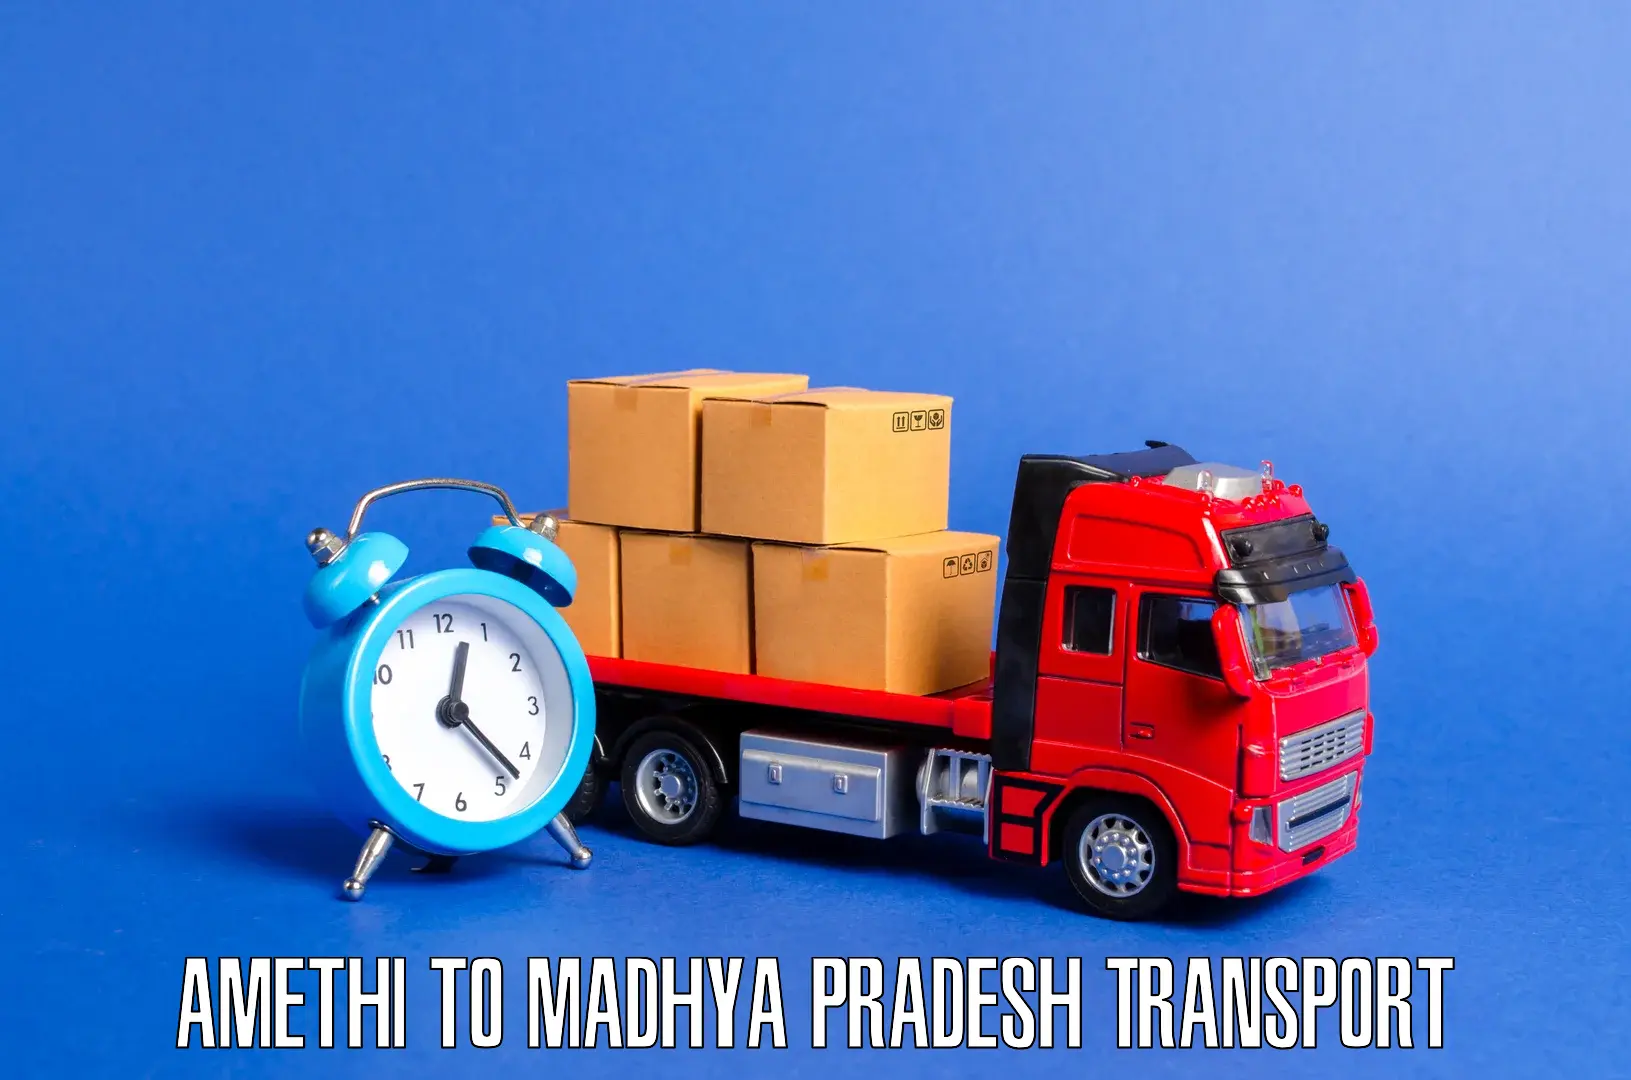 Cargo transport services Amethi to Jaitwara